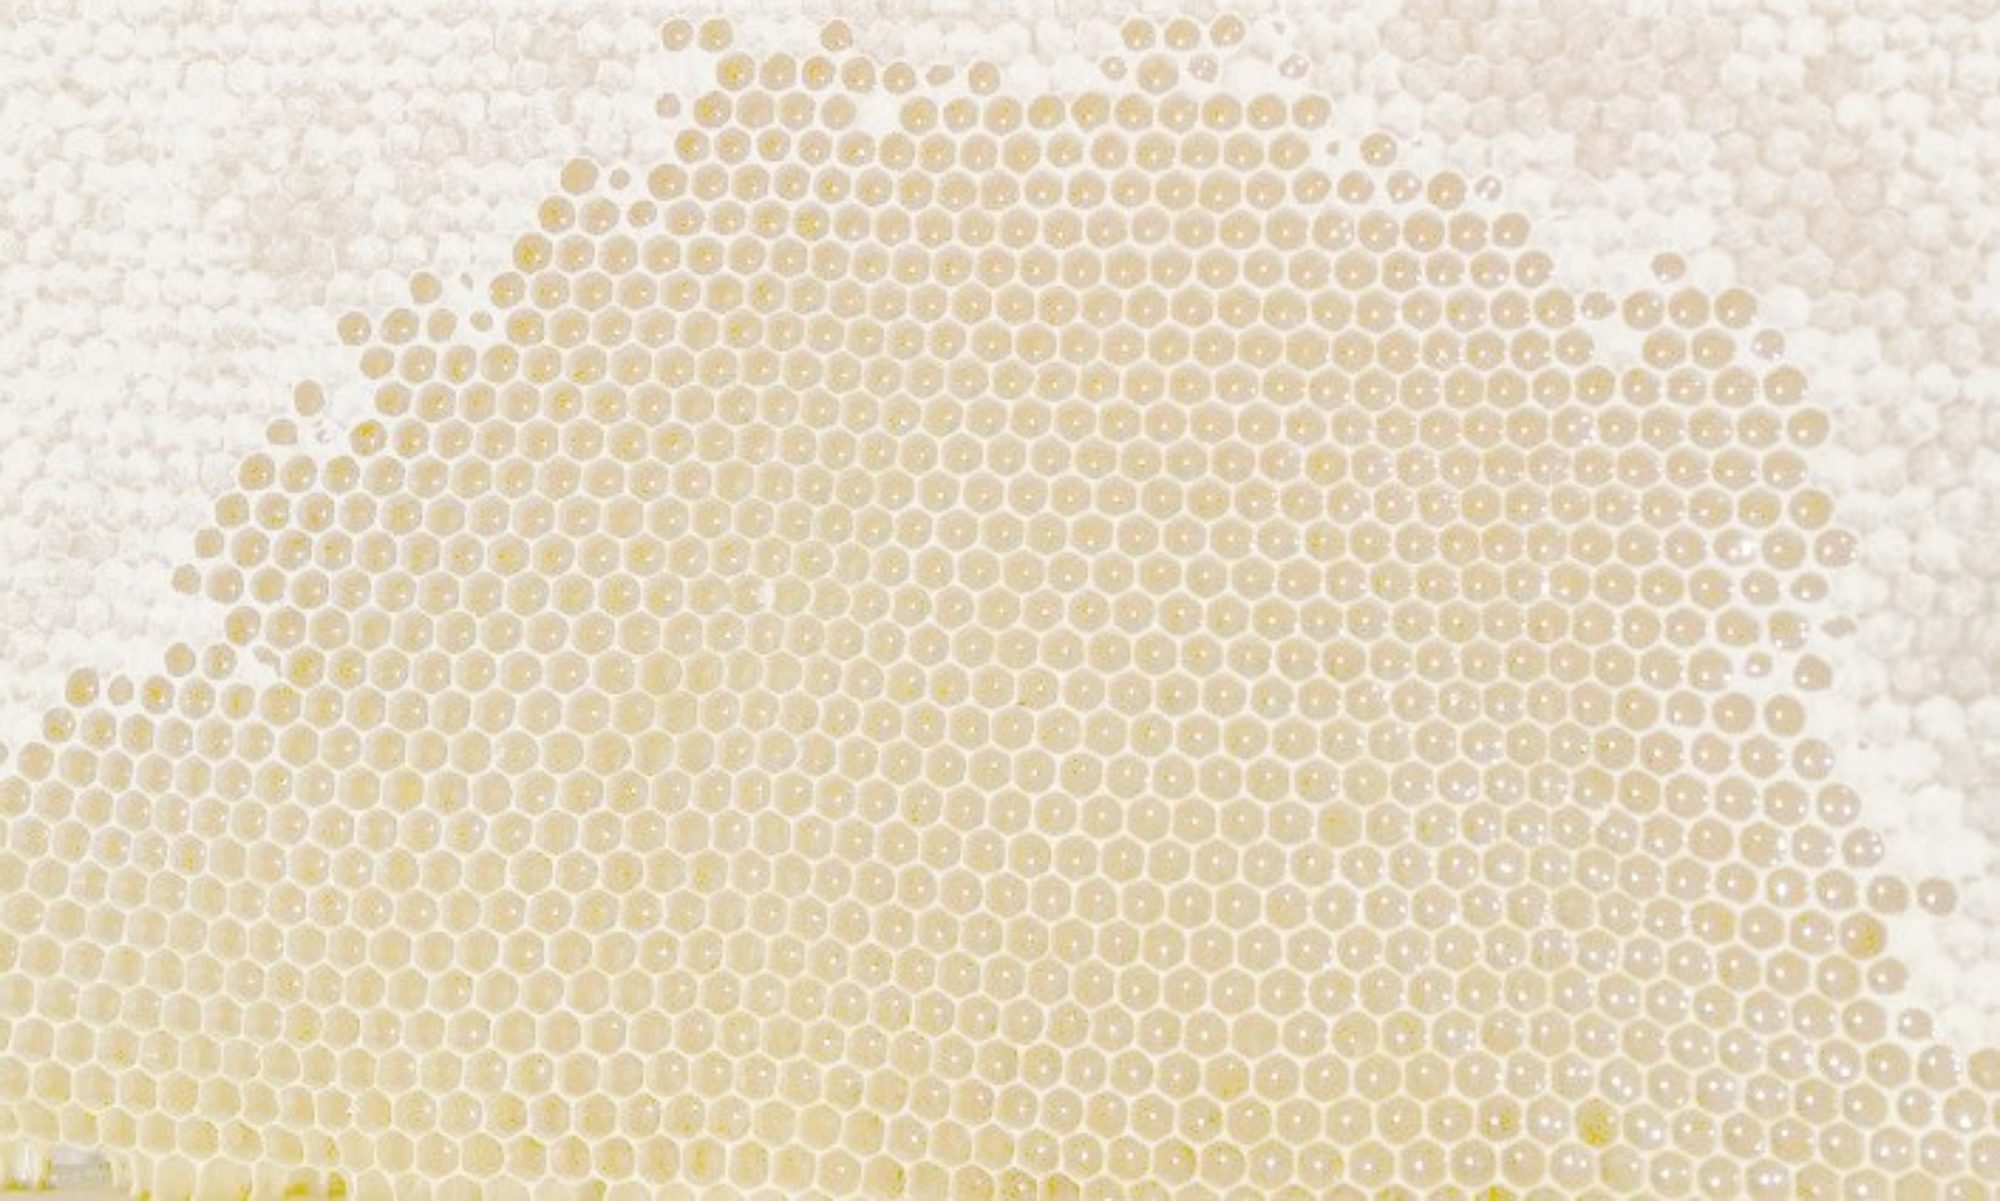 Data Science in beekeeping